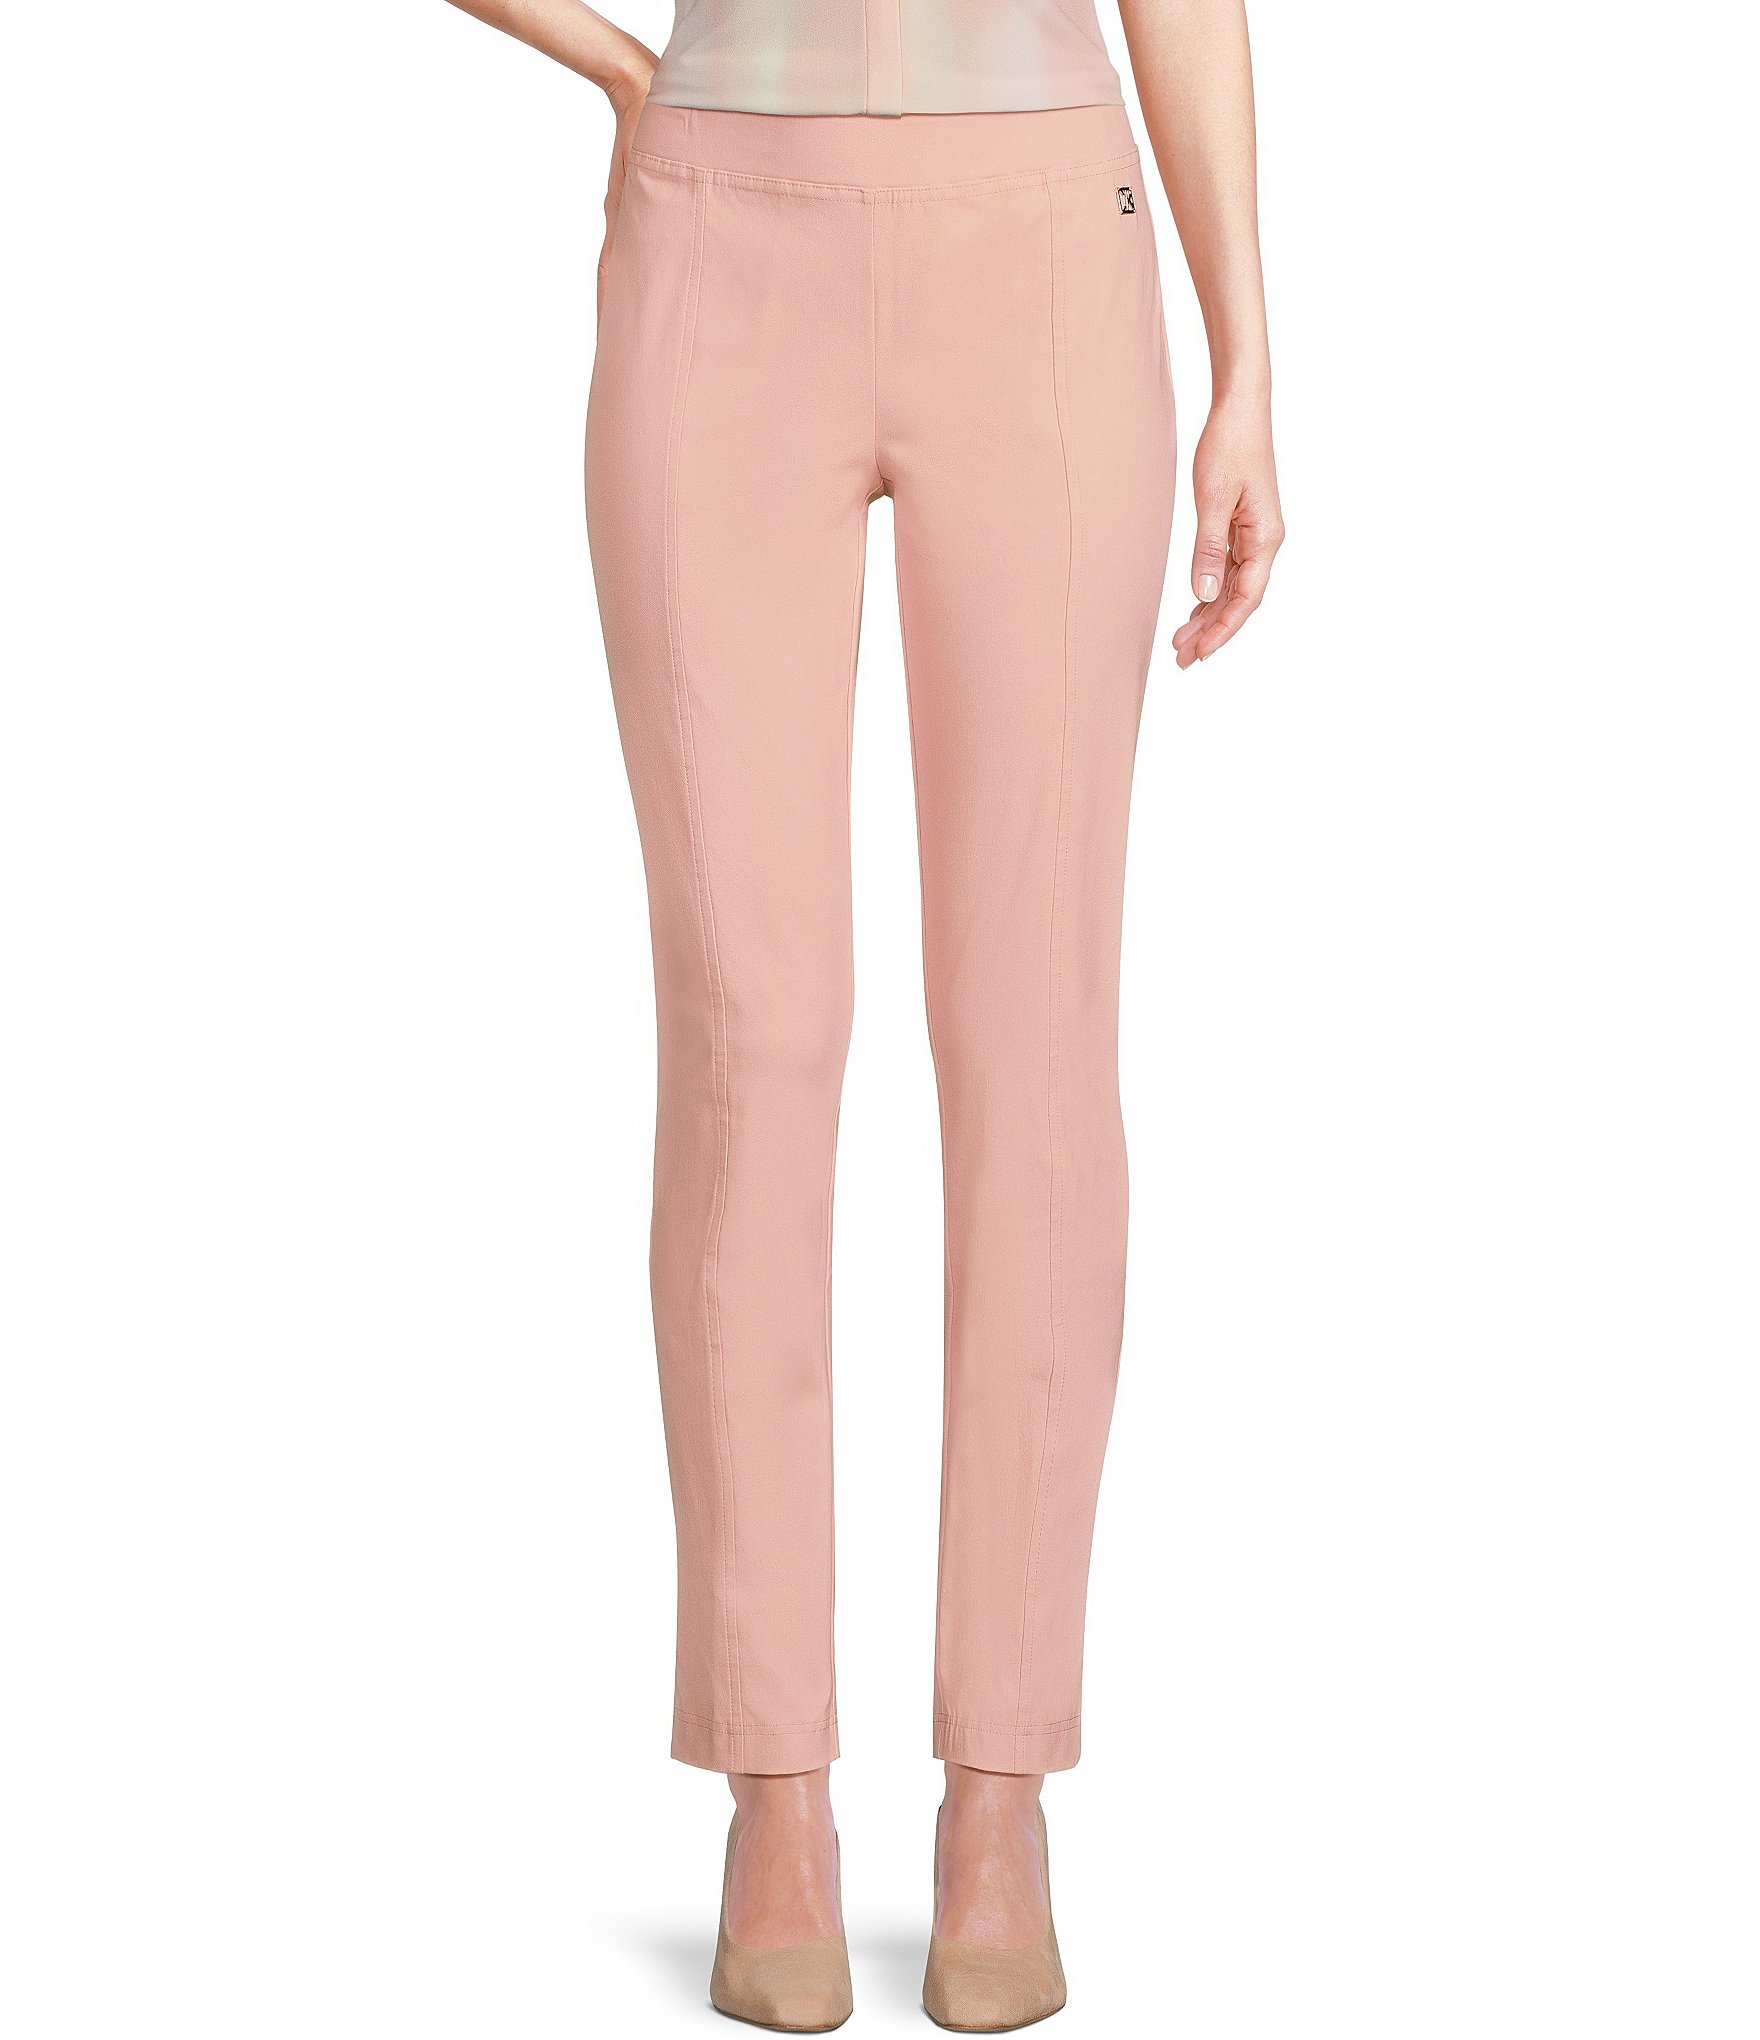 Sports knit pants - Pink  Sports pants women, Calvin klein, Knit